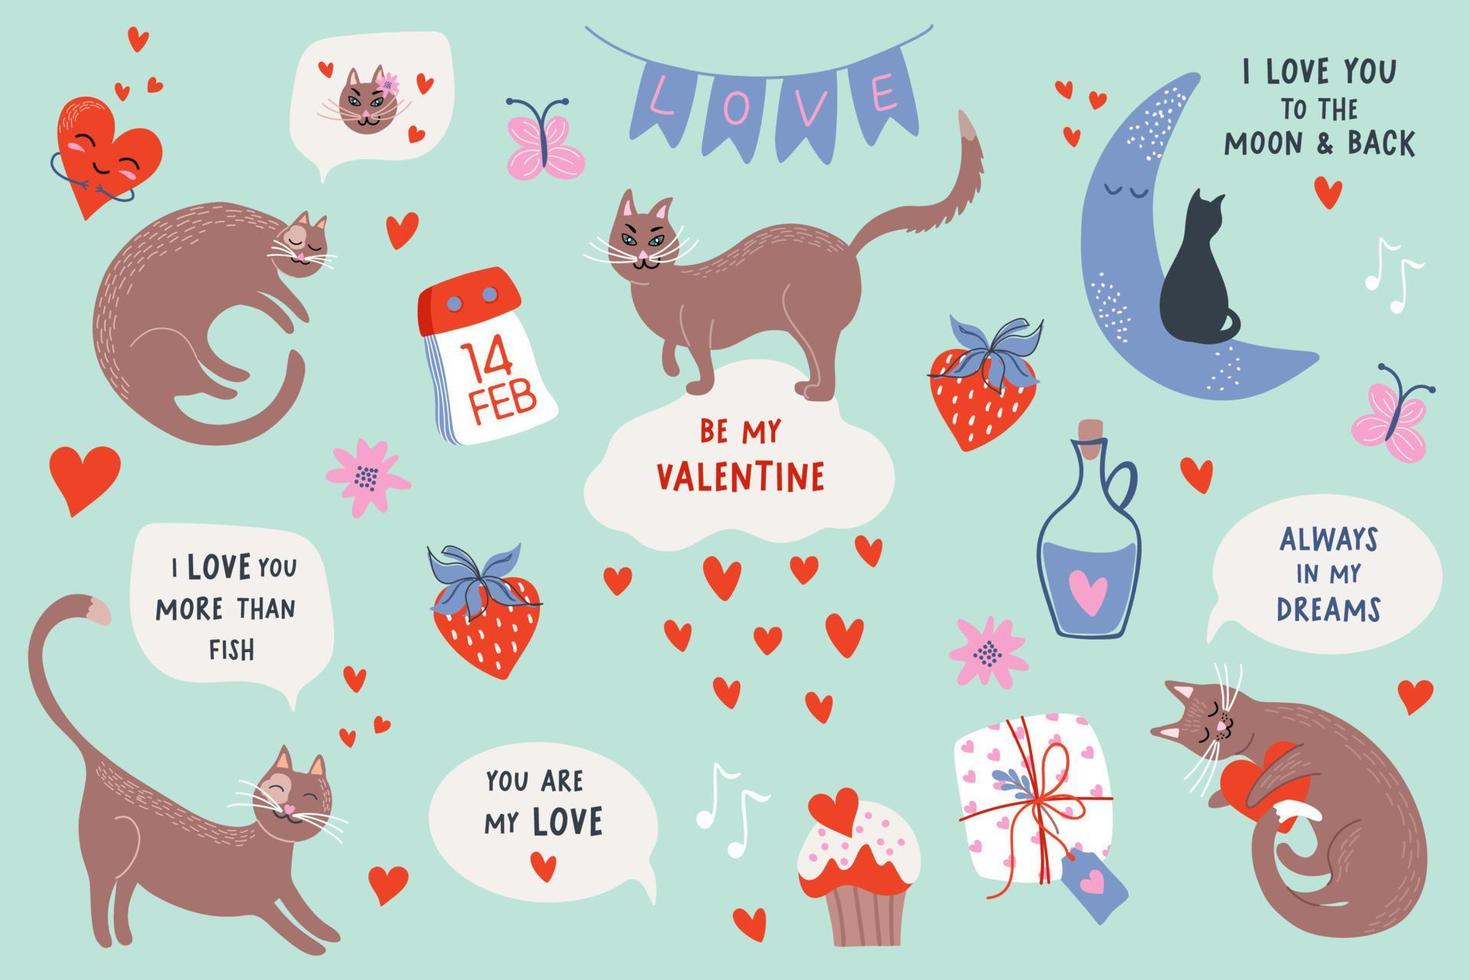 schattig reeks met katten, harten en verklaringen van liefde. romantisch kaarten met katten. Valentijnsdag dag vector illustraties.